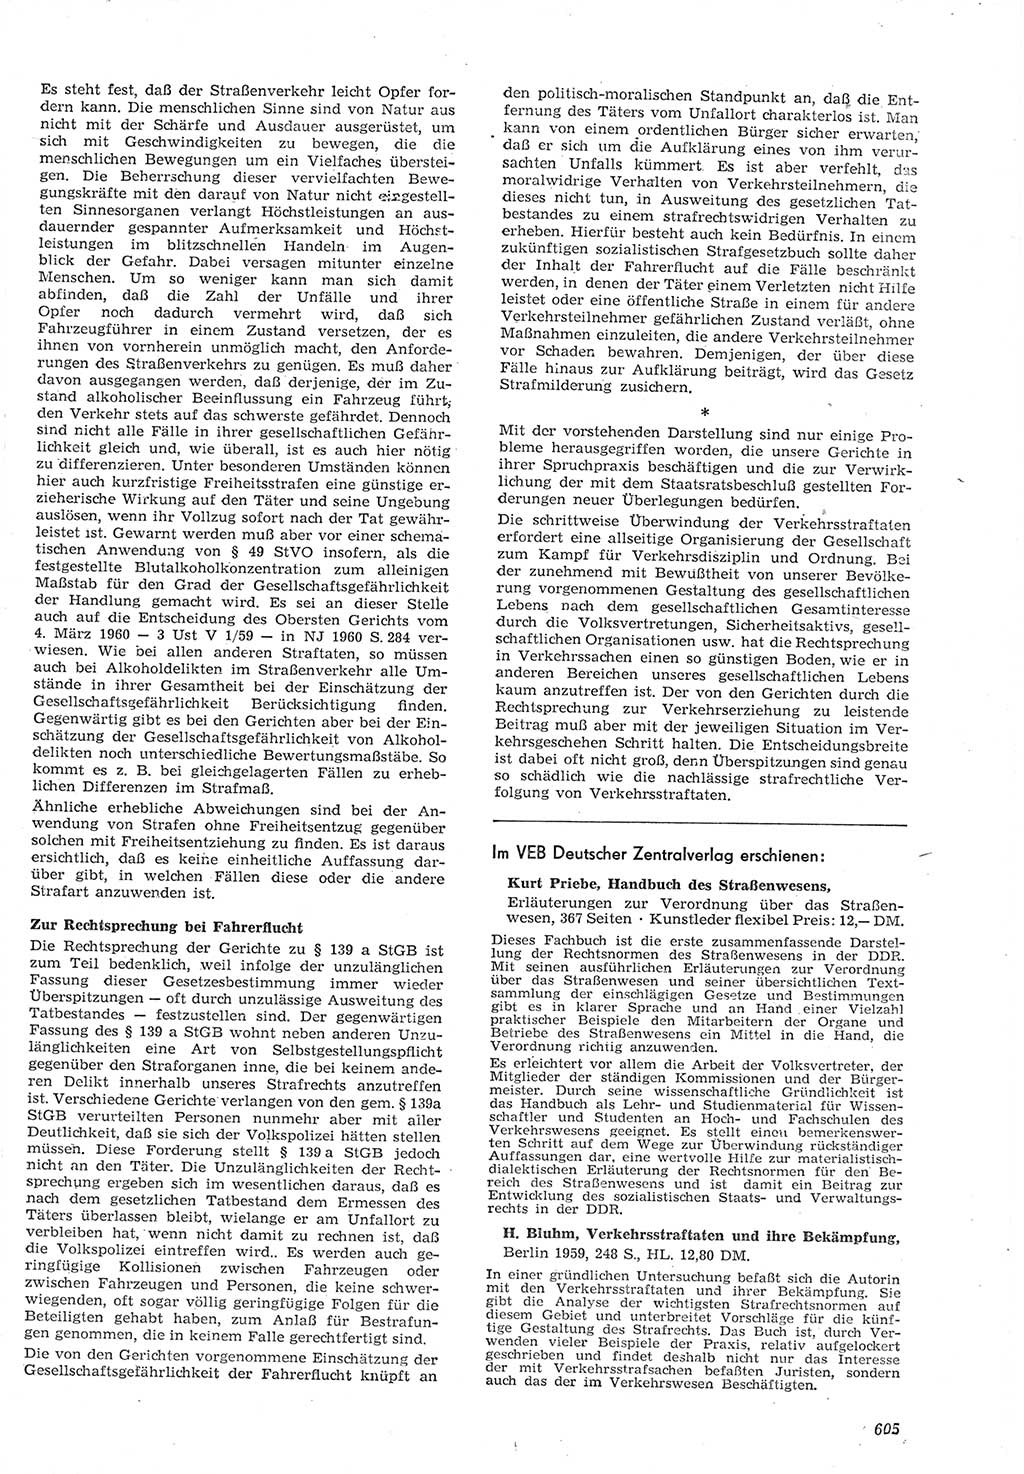 Neue Justiz (NJ), Zeitschrift für Recht und Rechtswissenschaft [Deutsche Demokratische Republik (DDR)], 15. Jahrgang 1961, Seite 605 (NJ DDR 1961, S. 605)